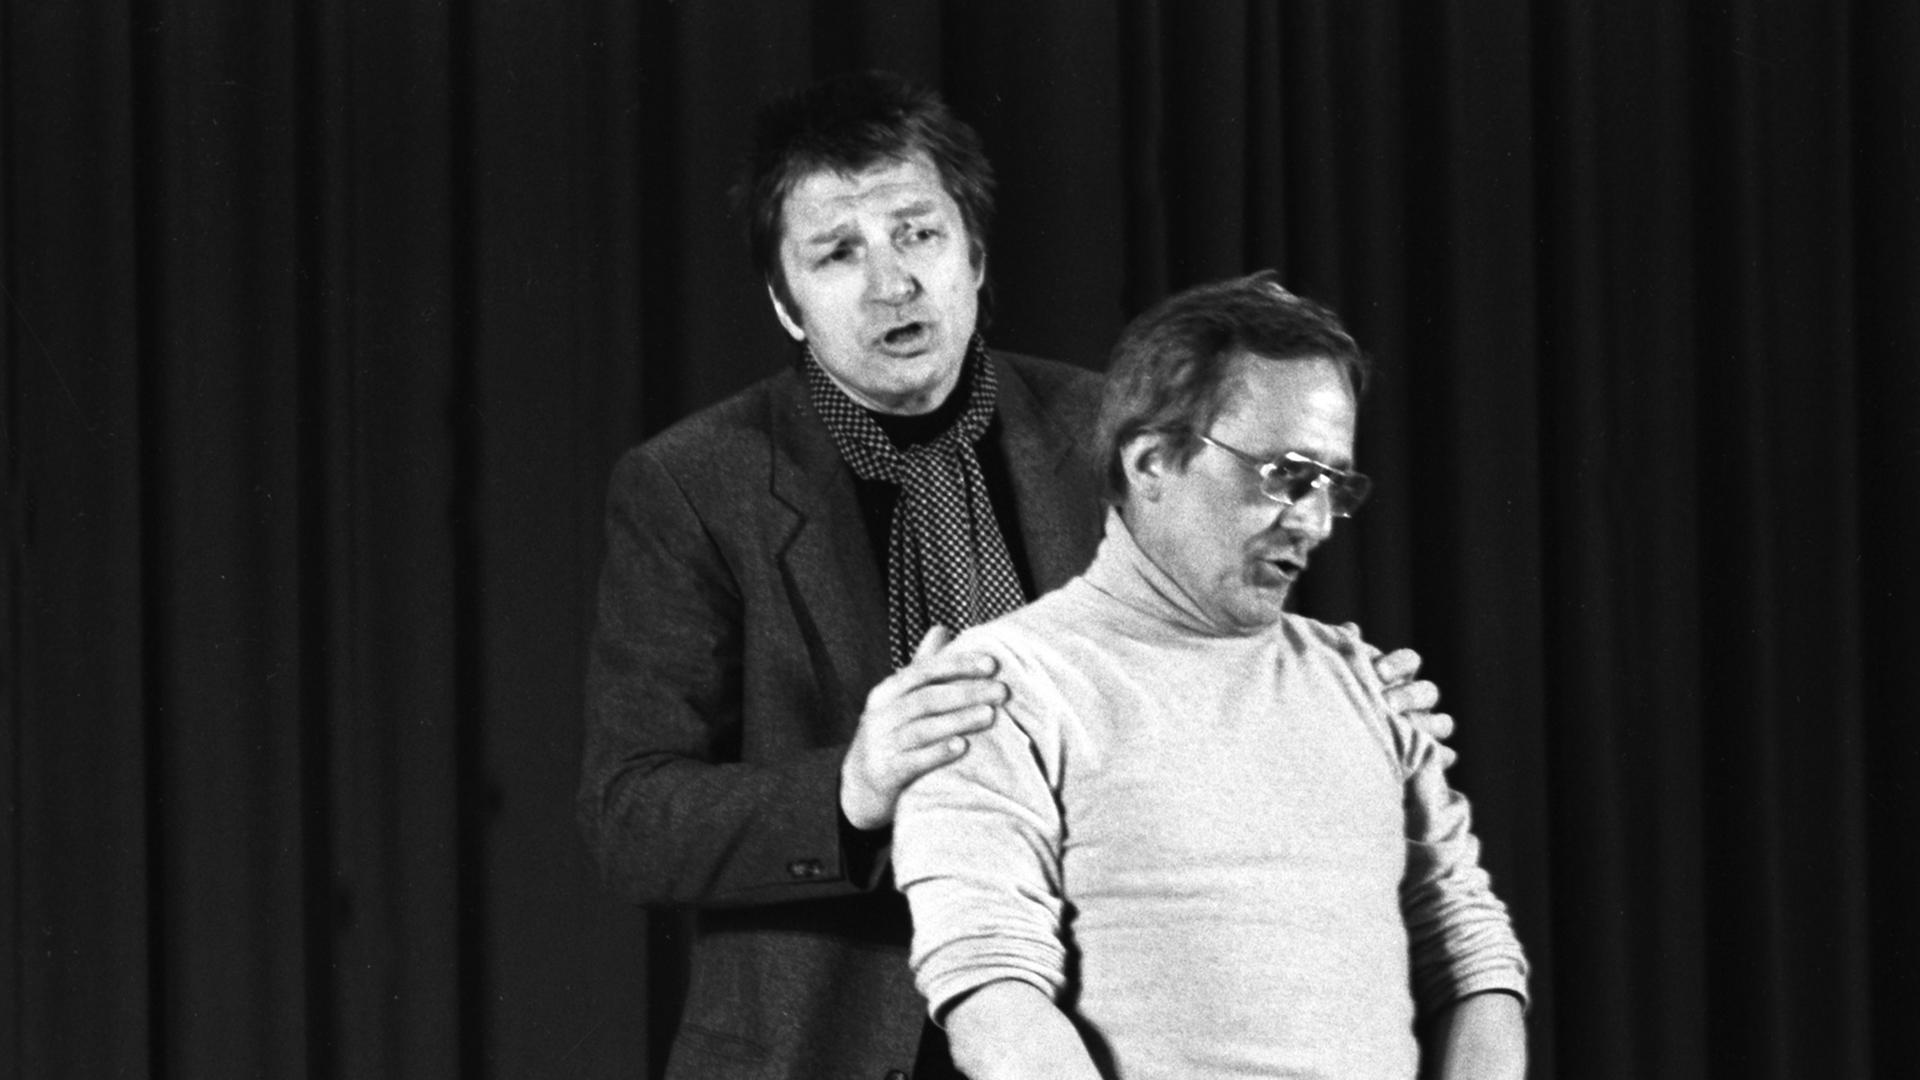 Das Kabarettisten-Duo Werner Schneyder (l) und Dieter Hildebrandt bei ihrem Auftritt im Januar 1985.